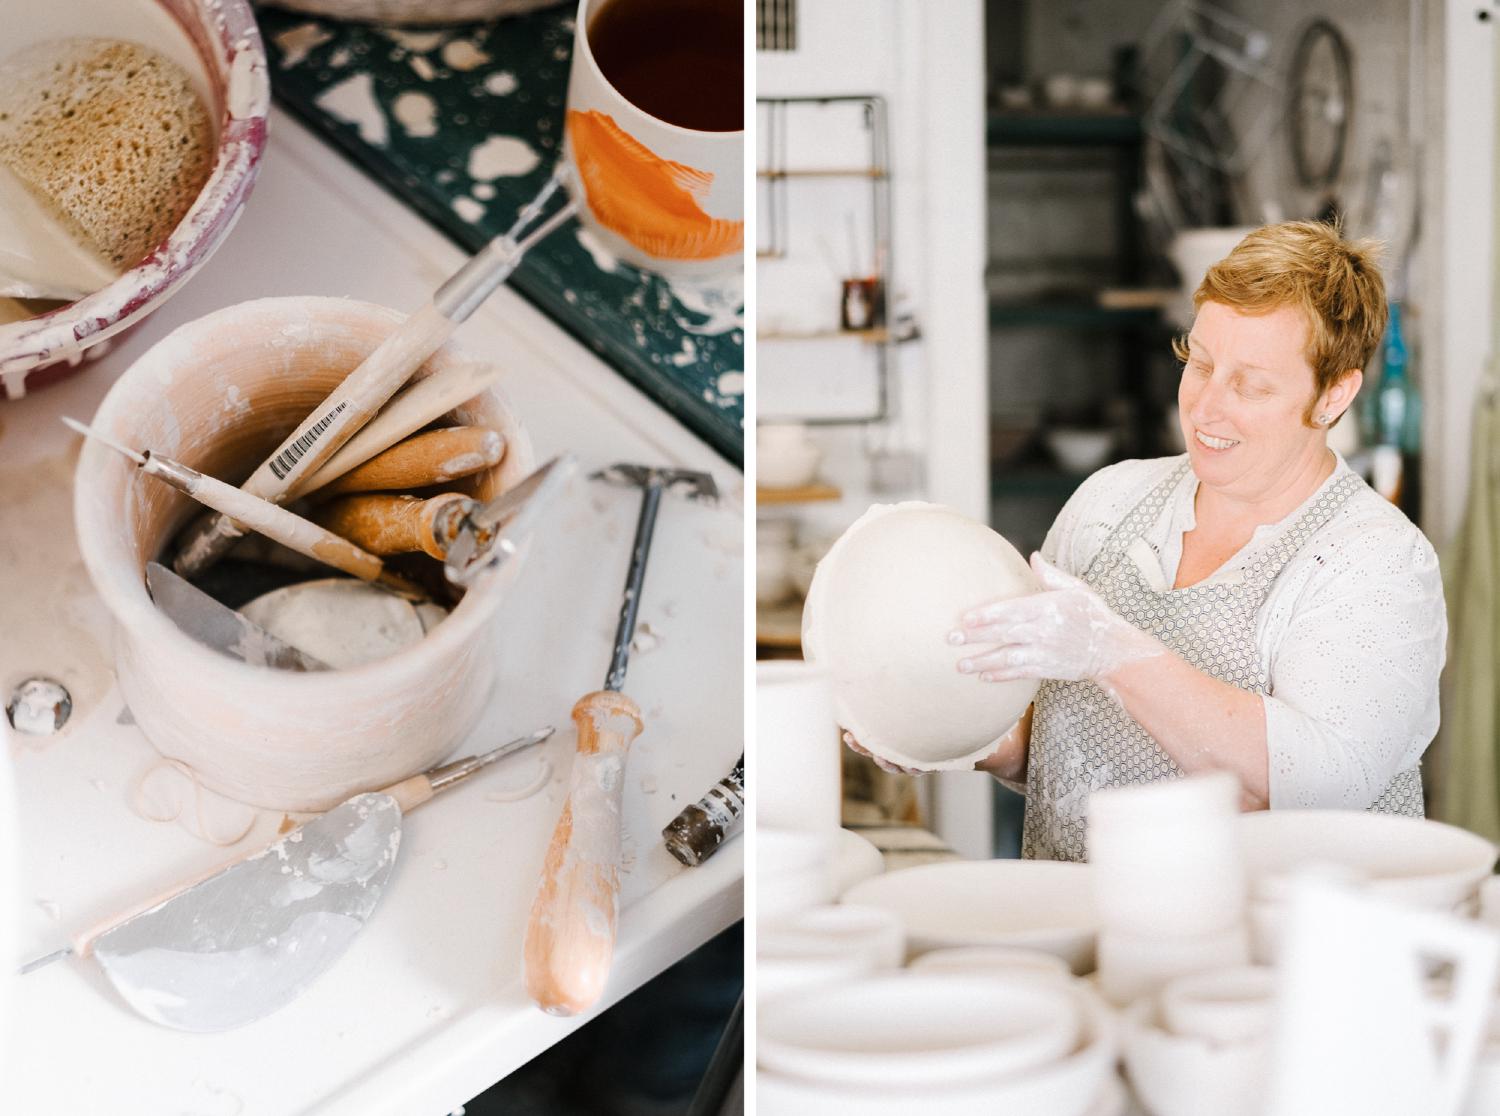 Diptyque de photo : l'une est un gros plan sur les pinceaux et outils de céramiste dans un bol en porcelaine, l'autre est l'artiste en train de façonner une sphere en argile.